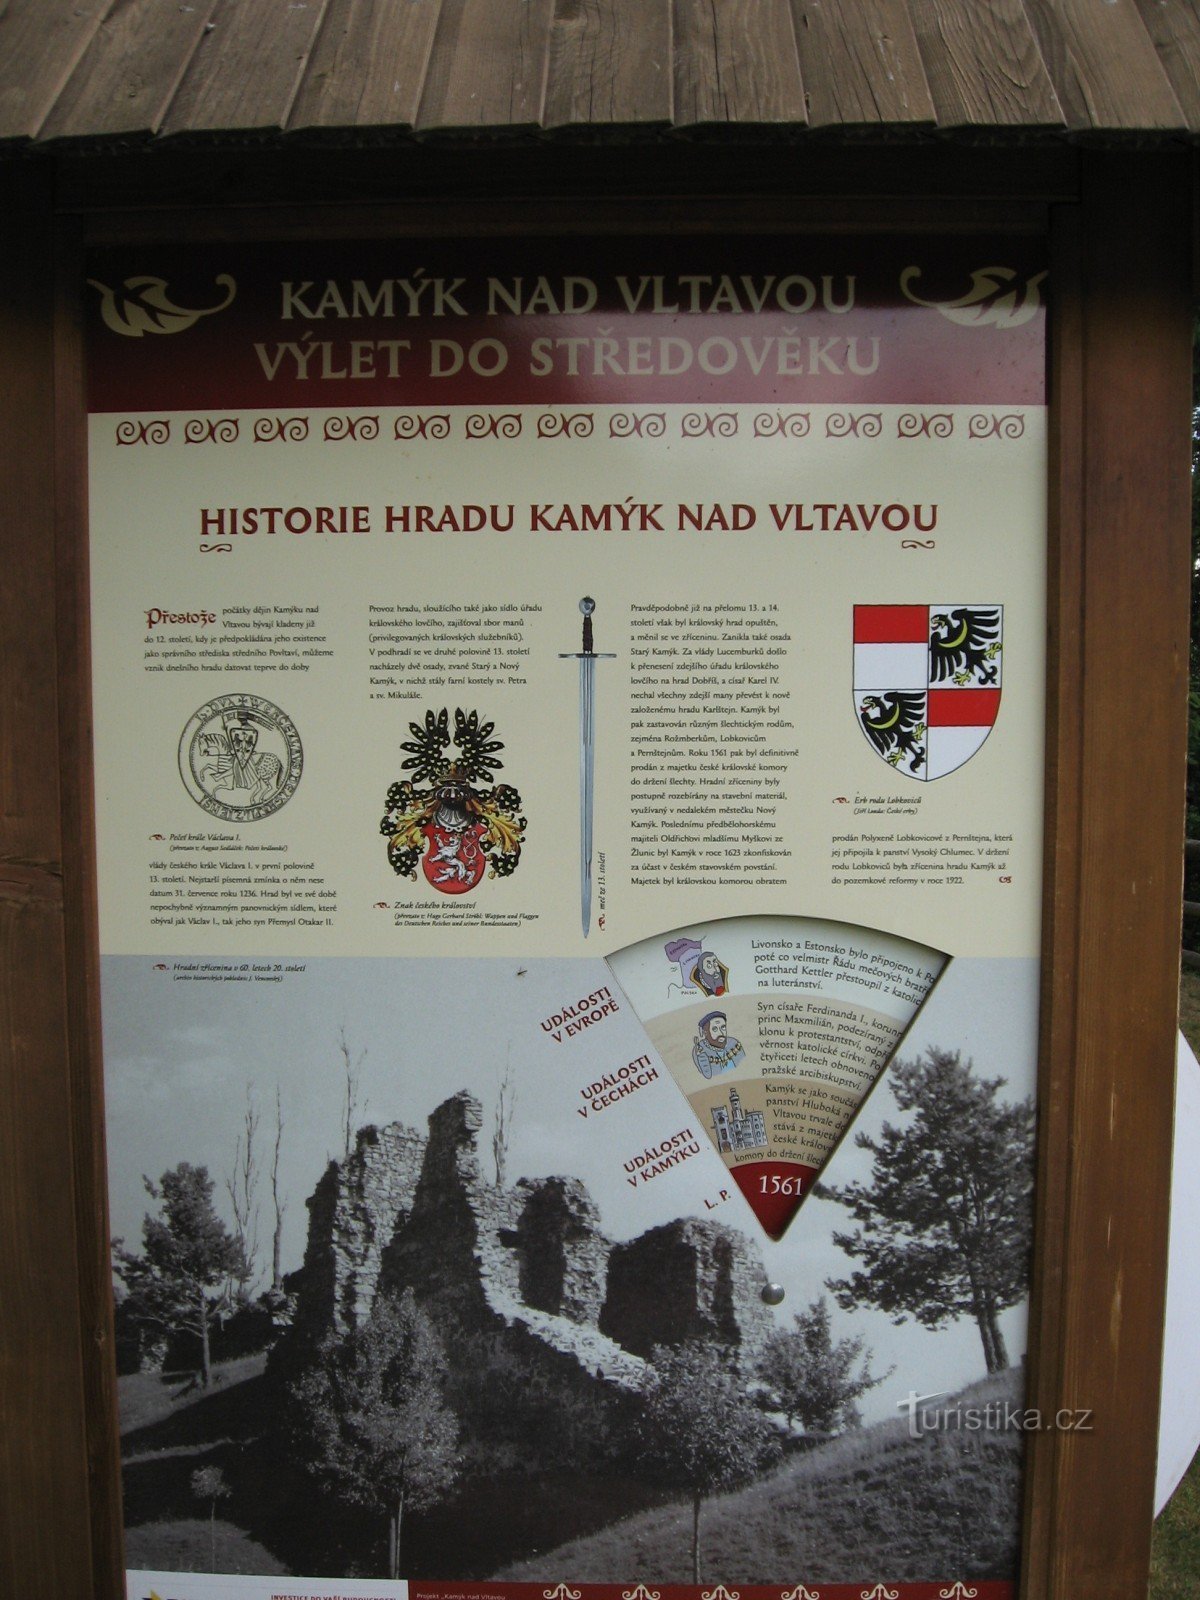 カミーク ナド ヴルタヴォウ遺跡の敷地内にある情報パネル